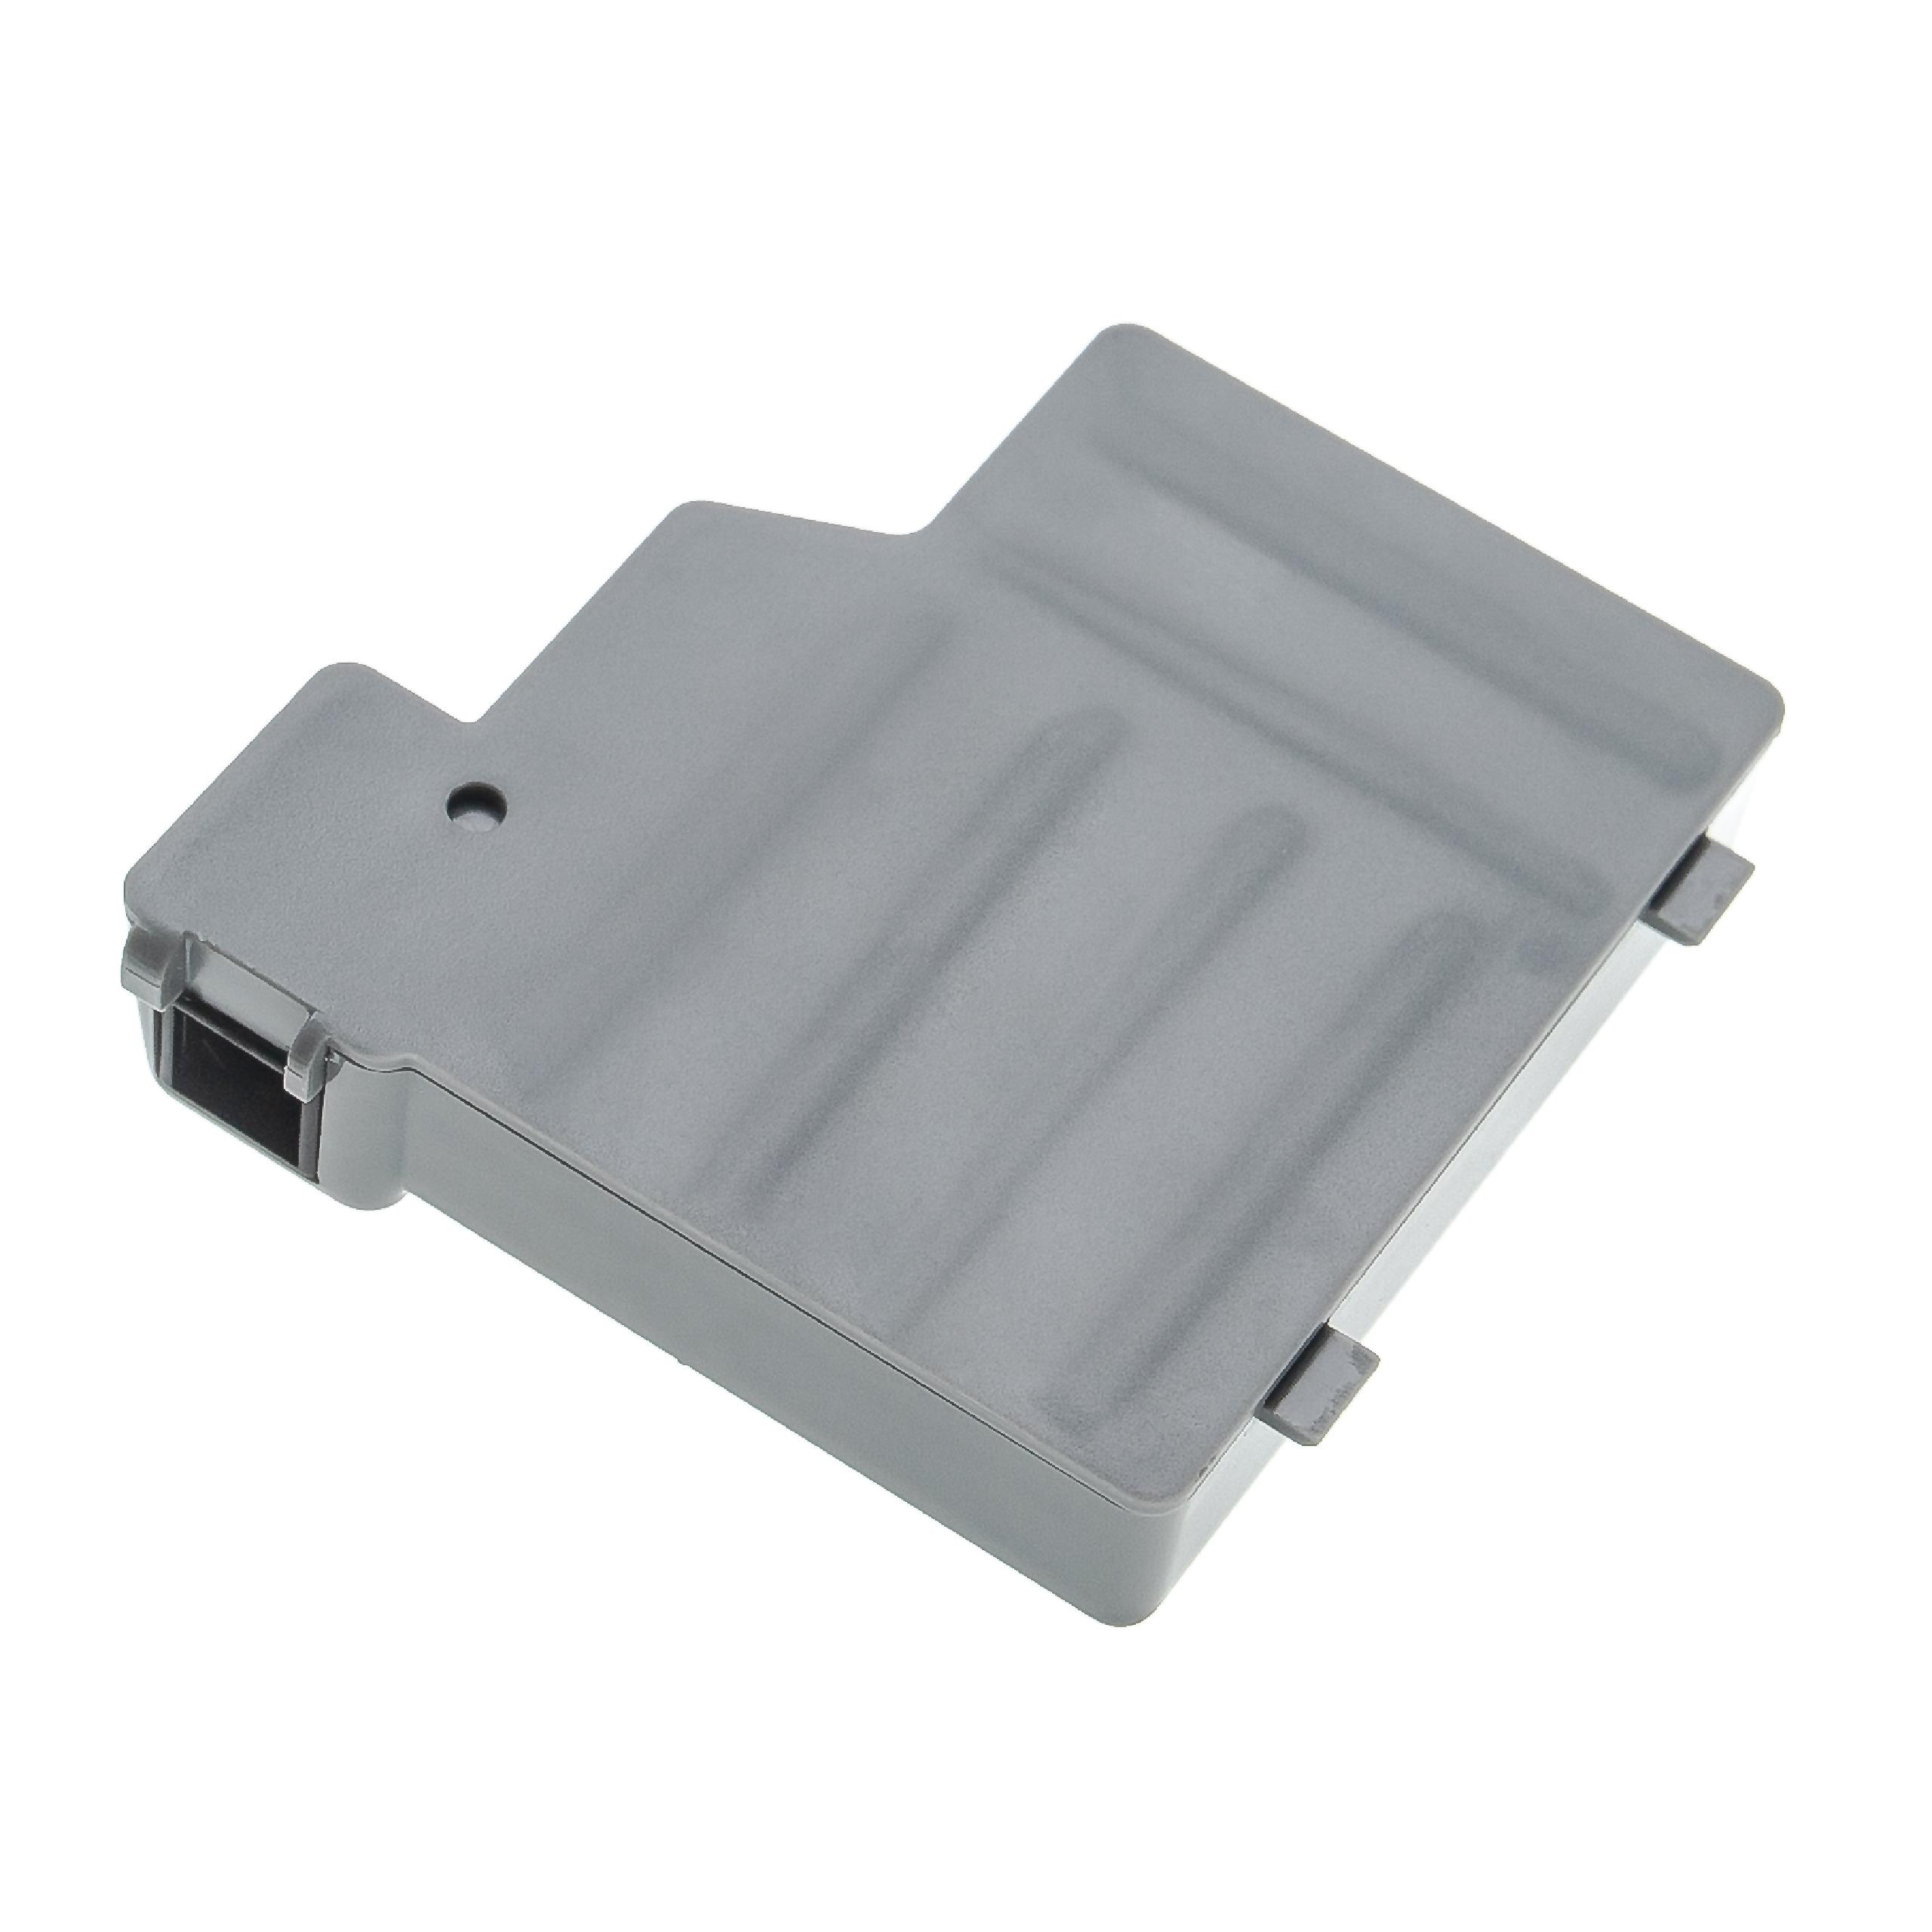 Batteria per stampante sostituisce Zebra CC14035-4, CC14035-3 Zebra - 1800mAh 7,2V NiMH